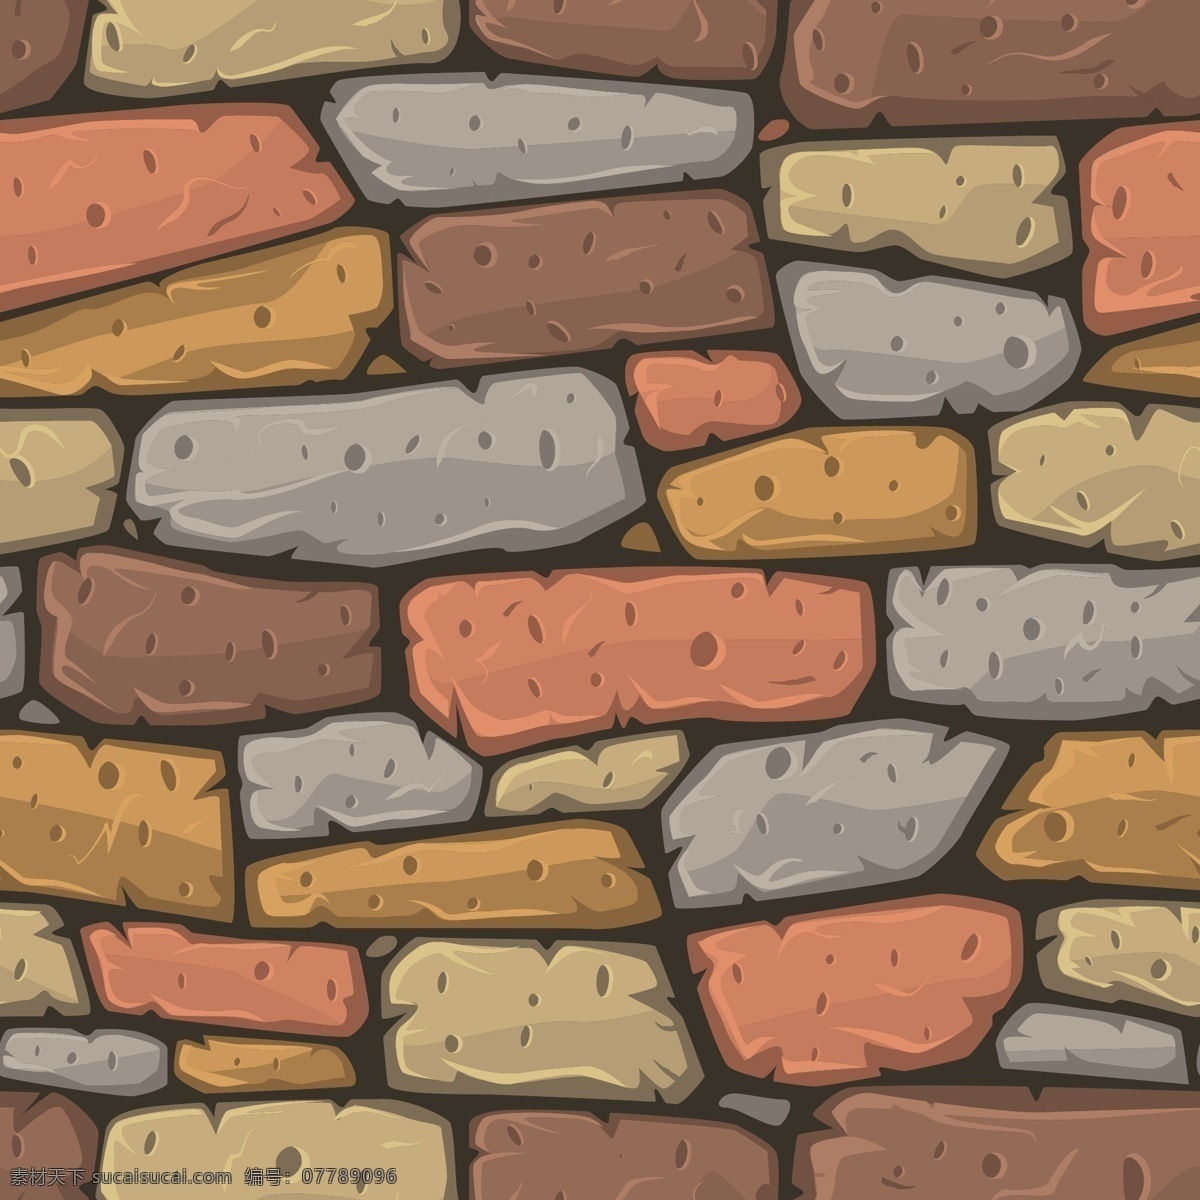 彩色 纹理 的卡 通 风格 石头 背景摘要 人物 卡通 建筑垃圾 墙 建筑 岩石 绘画 自然 石材 地板 大理石 建造 材料 漫画 粗糙的表面